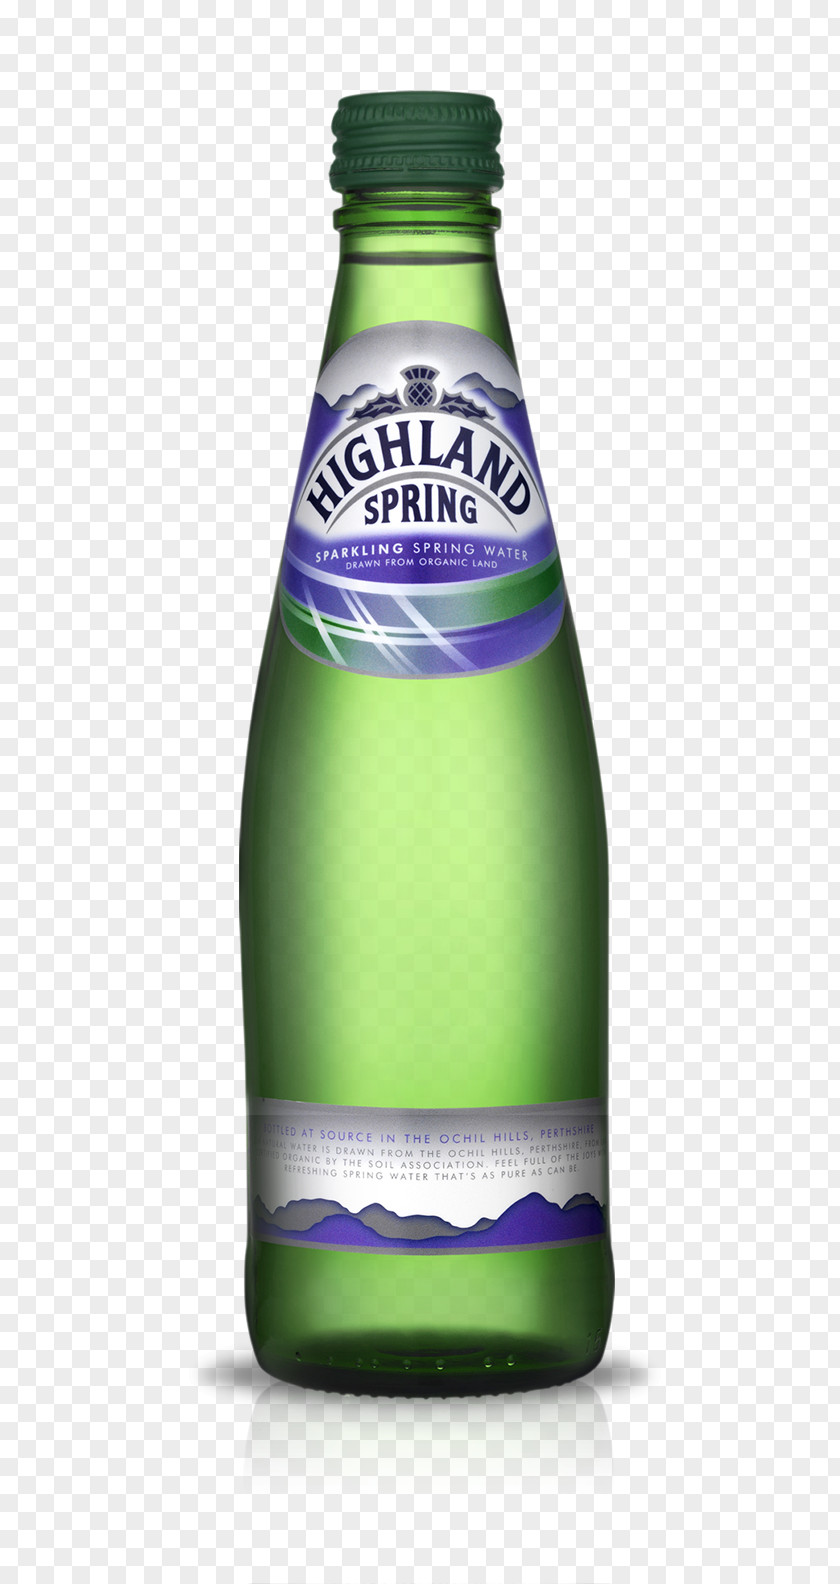 Mineral Water Bottles Carbonated Highland Spring Beer Glass Bottle PNG